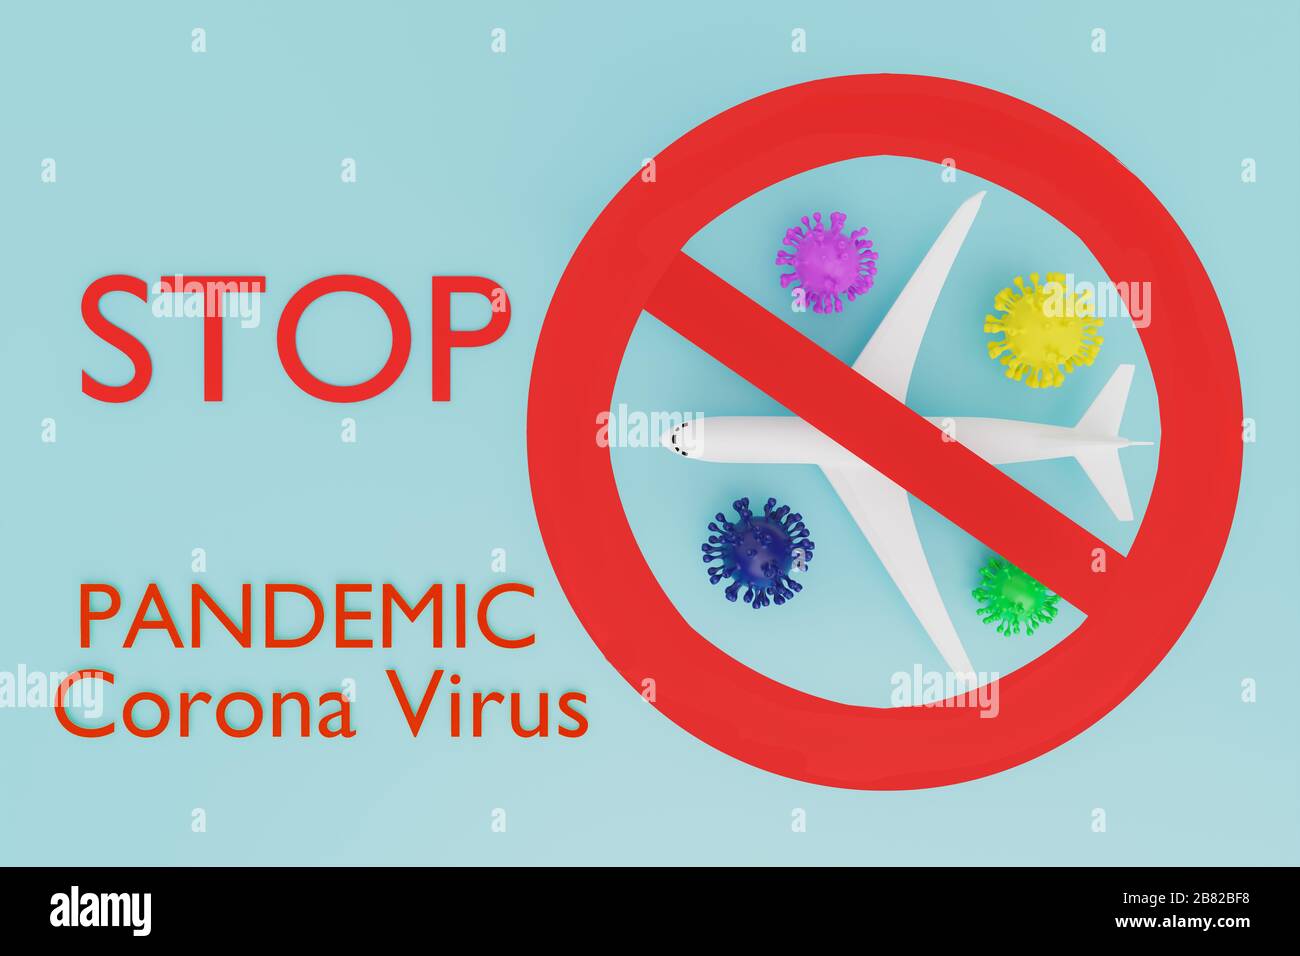 STOPPEN Sie die globale Pandemie mit Coronavirus COVID-19 mit dem Flugzeug, stoppen Sie die Pandemie Reise stoppen Stoppen Sie die Ausbreitung der Keime COVID-19,3D-Abbildung Stockfoto